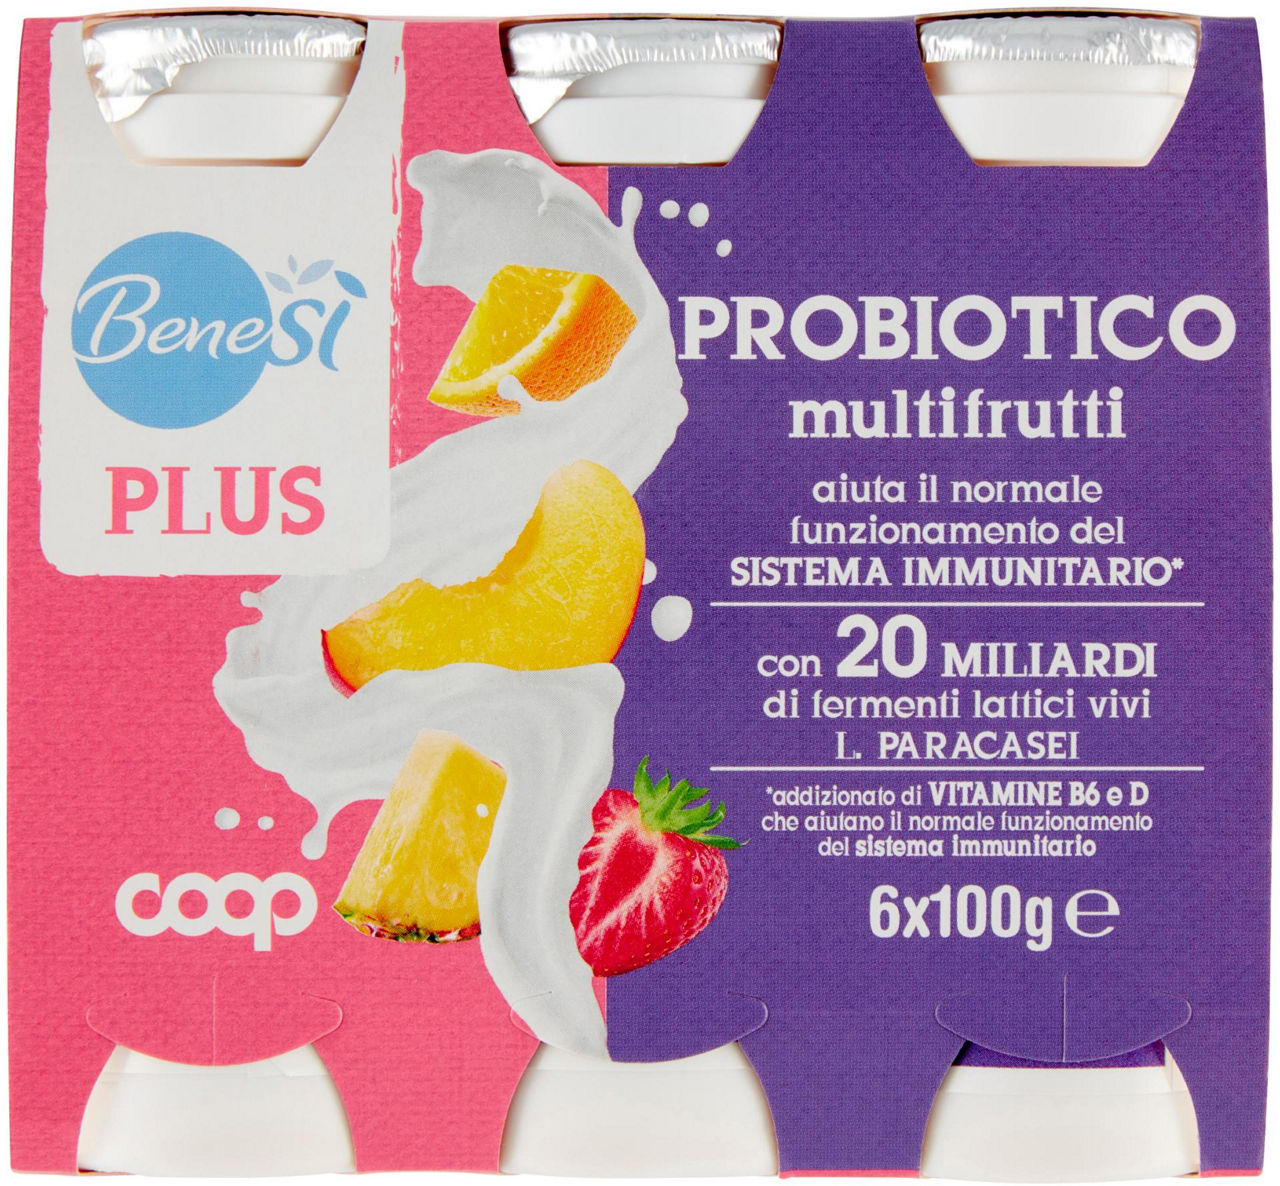 Probiotico multifrutti benes' plus 6 x 100 g